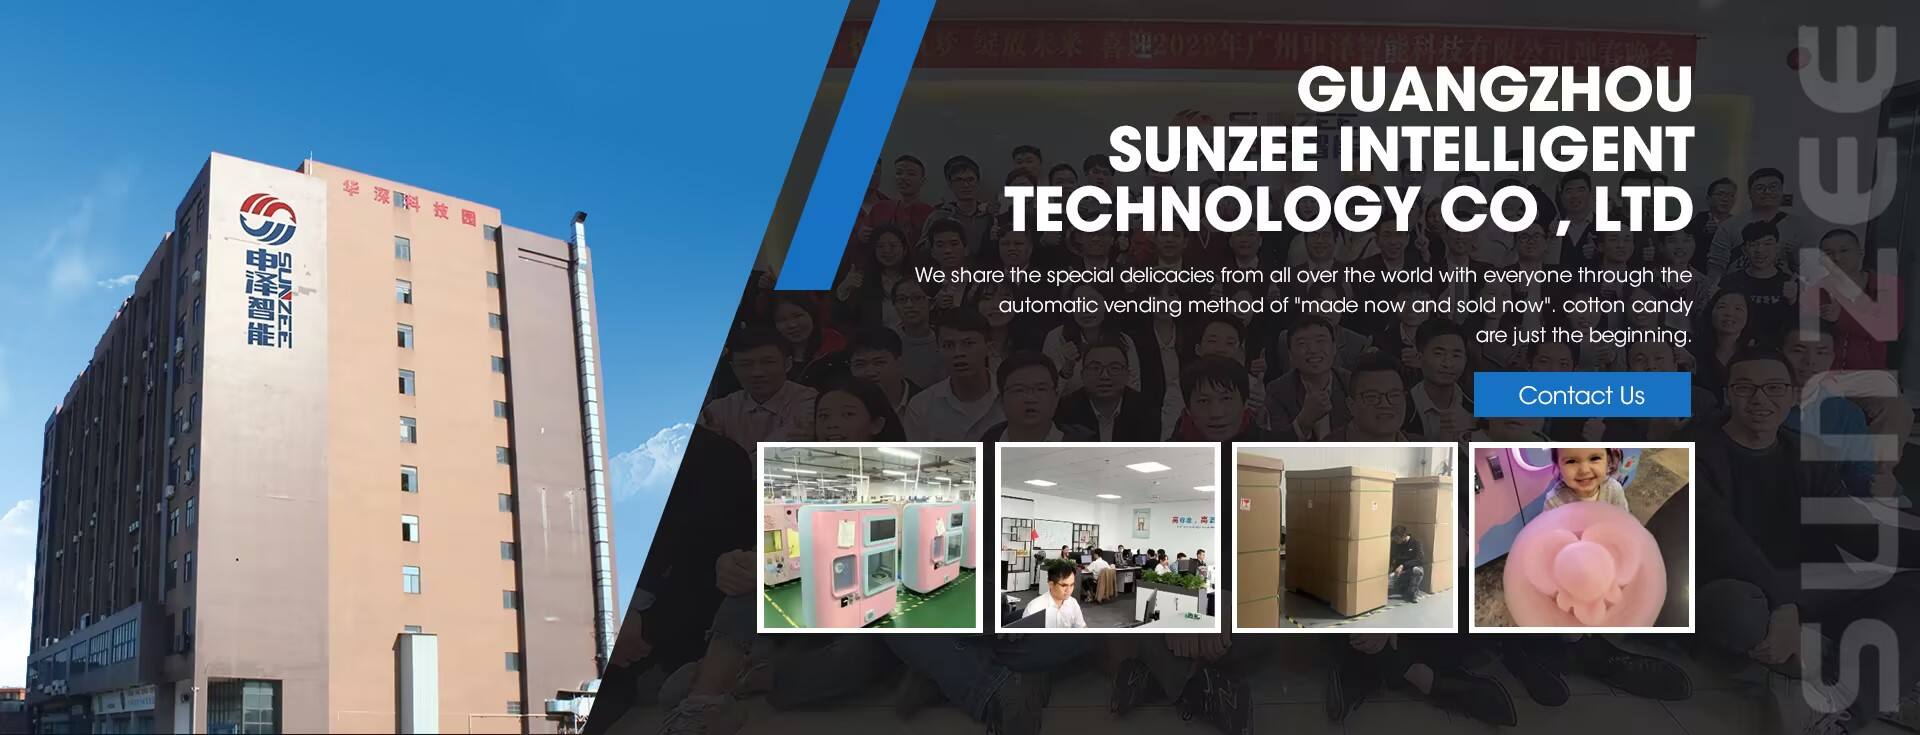 Guangzhou Sunzee Tecnología inteligente Co., Ltd.